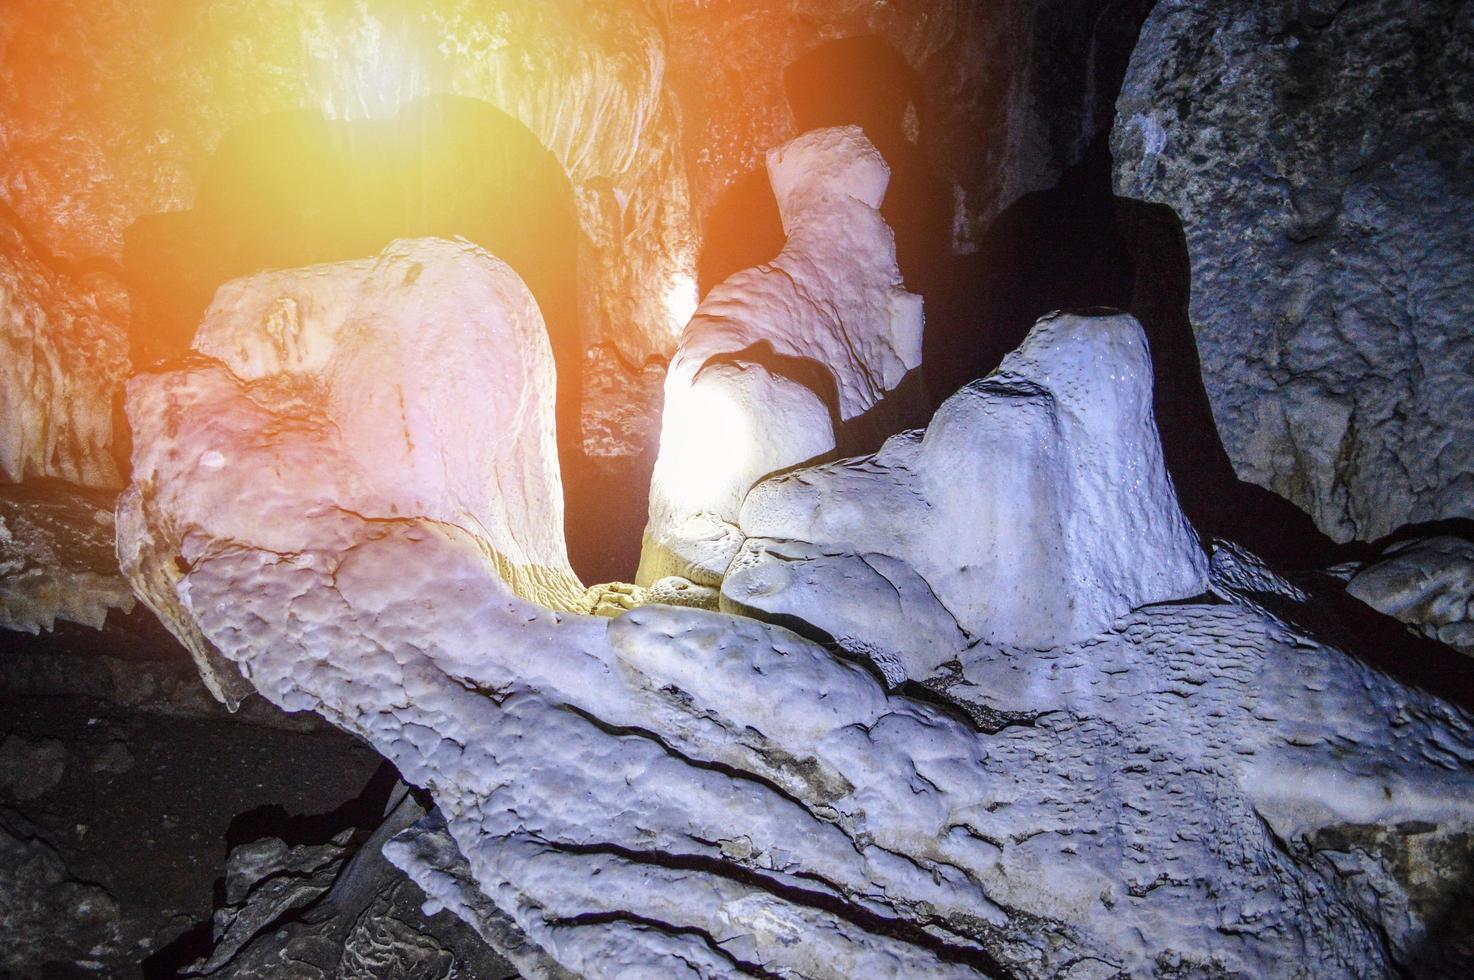 pedra estalagmite e estalactite na caverna escura com luz da lanterna foto